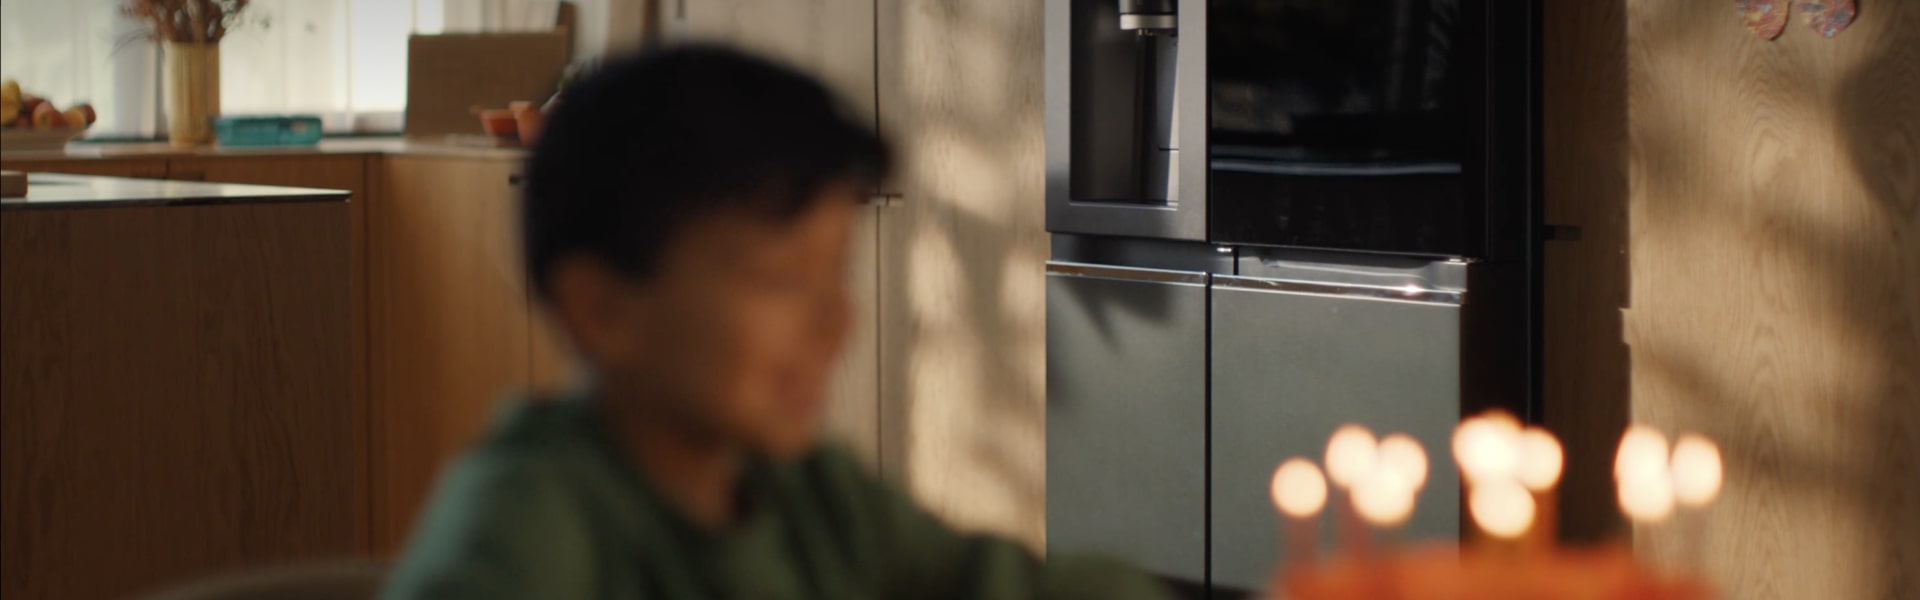 Khuôn mặt của đứa trẻ hiện lên mờ nhạt trước chiếc bánh dưới ánh nến và chiếc tủ lạnh LG InstaView hiện rõ ở phía sau.